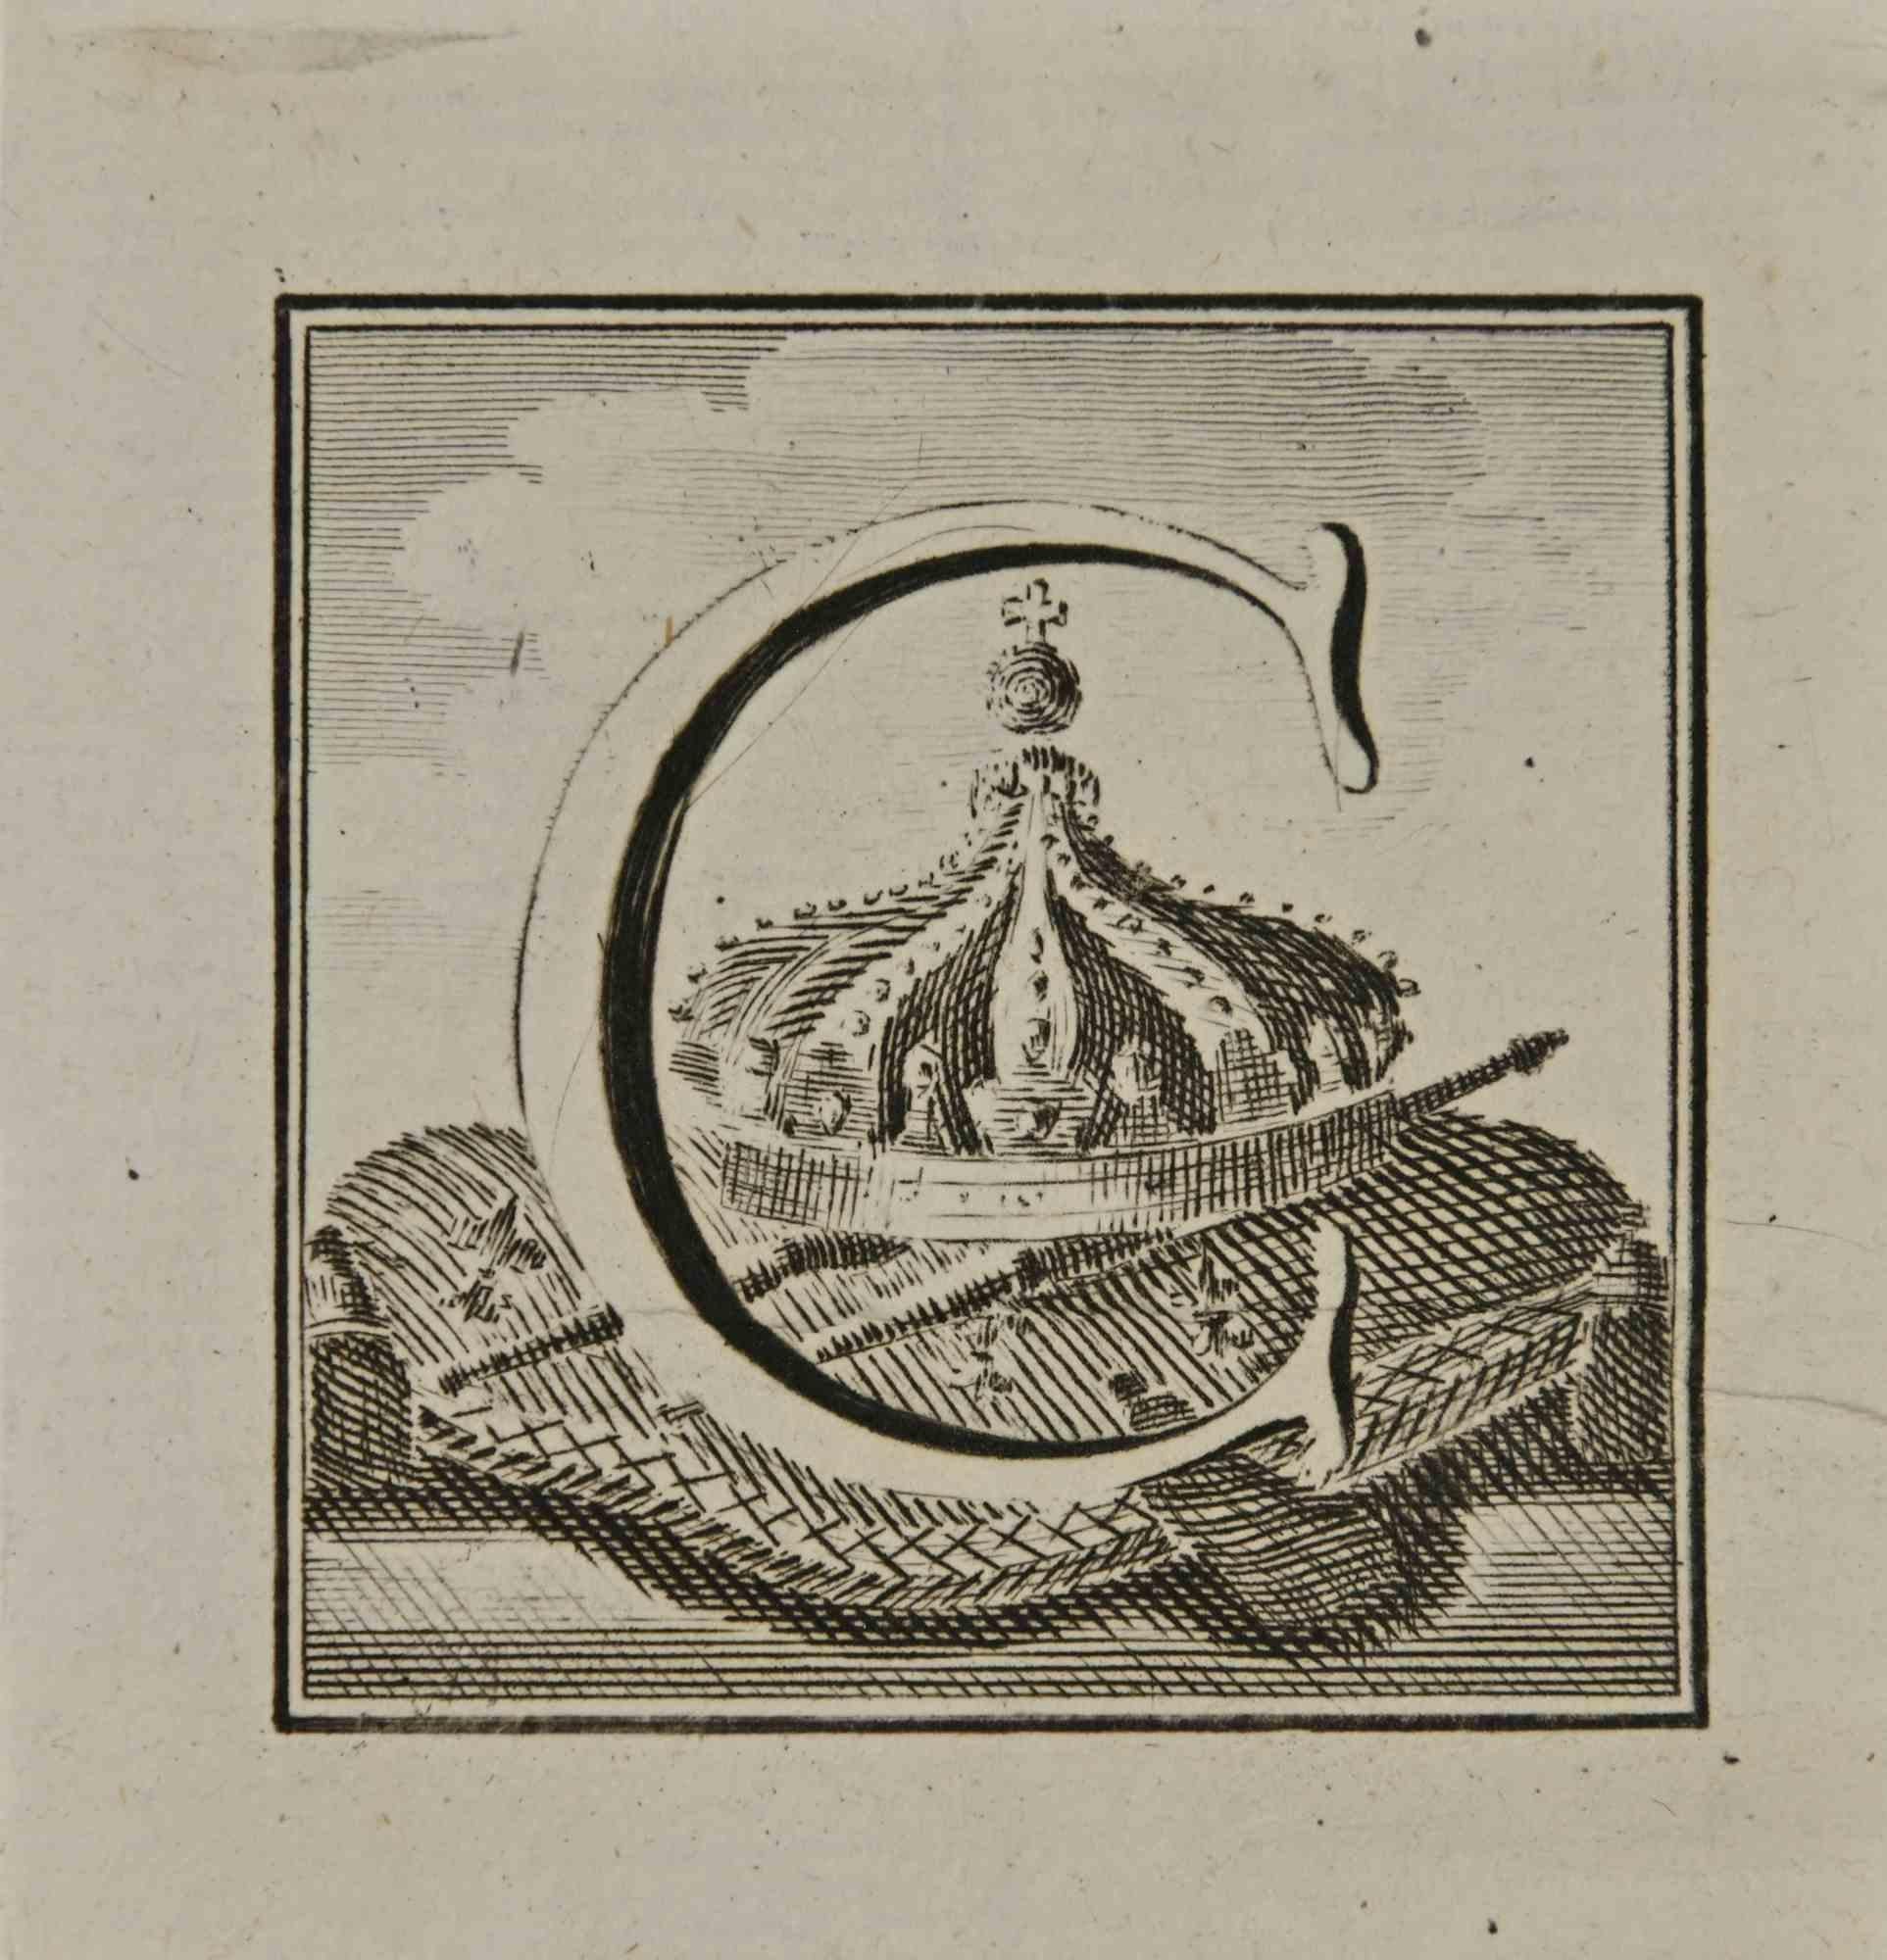 Lettre de l'alphabet C,  de la série "Antiquités d'Herculanum", est une gravure sur papier réalisée par Luigi Vanvitelli au 18ème siècle.

Bonnes conditions.

La gravure appartient à la suite d'estampes "Antiquités d'Herculanum exposées" (titre